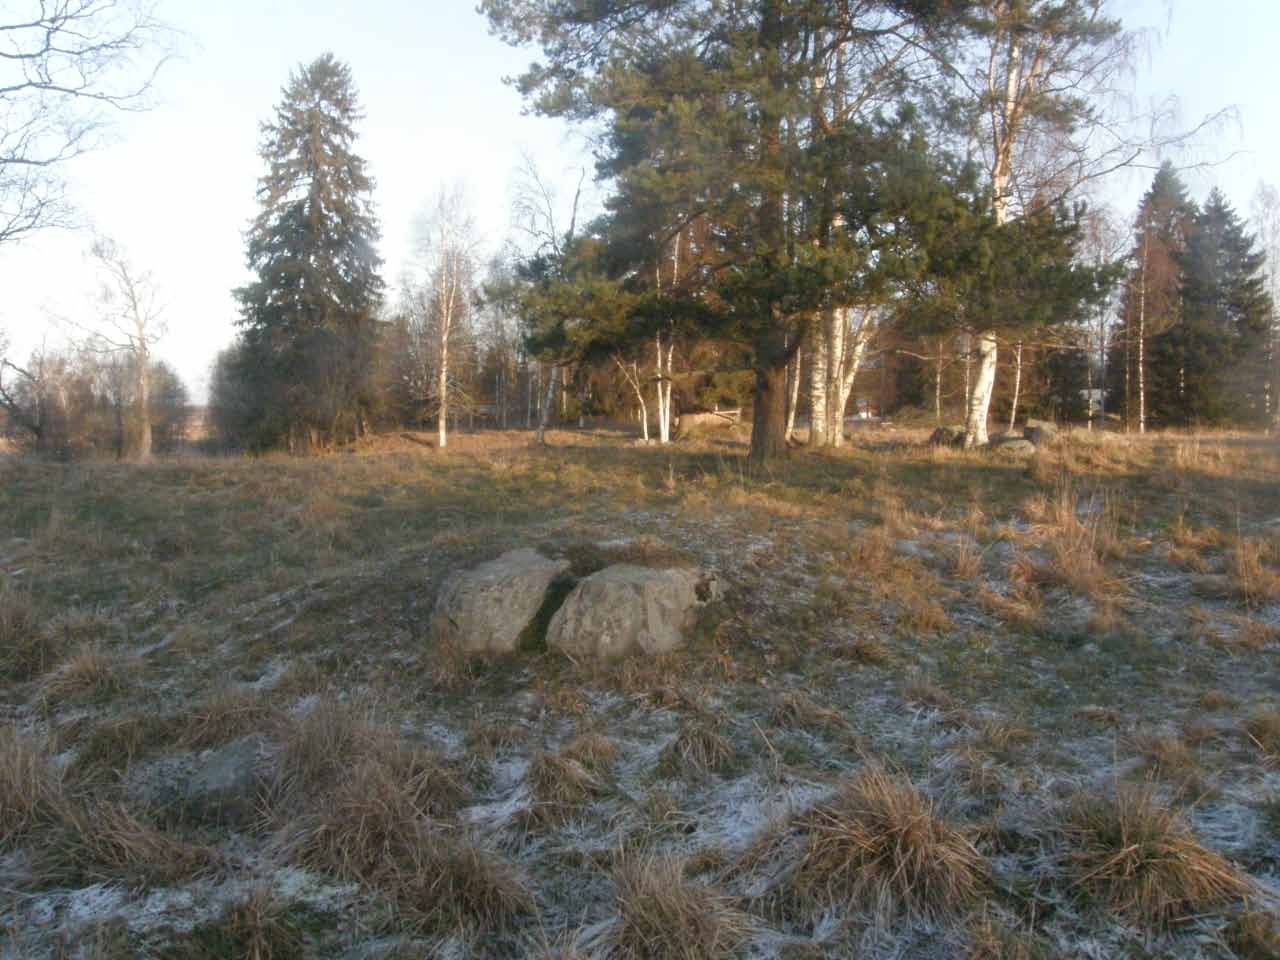 Kuva: Vuonna 1999 tutkittu röykkiö. Etualalla olevassa kivessä on mahdollisesti yksi matala kuppi. Kuvattu koilliseen.  Lahden museot / Päijät-Hämeen alueellinen vastuumuseo. CC BY 4.0 Antti Bilund 9.12.2020